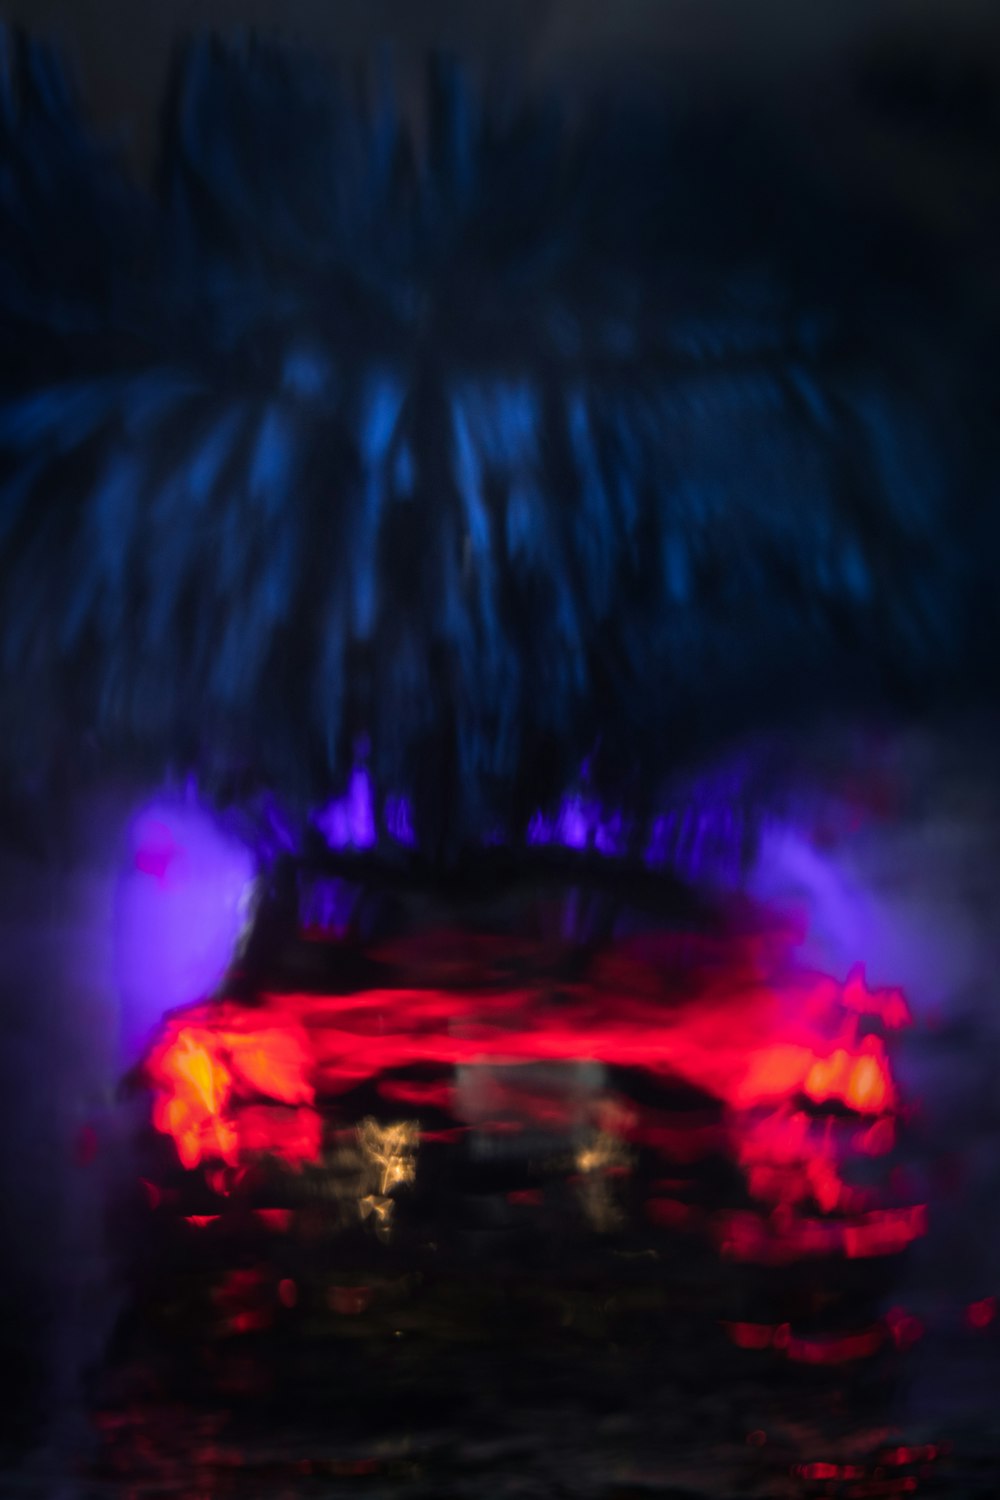 a blurry photo of a car in the rain